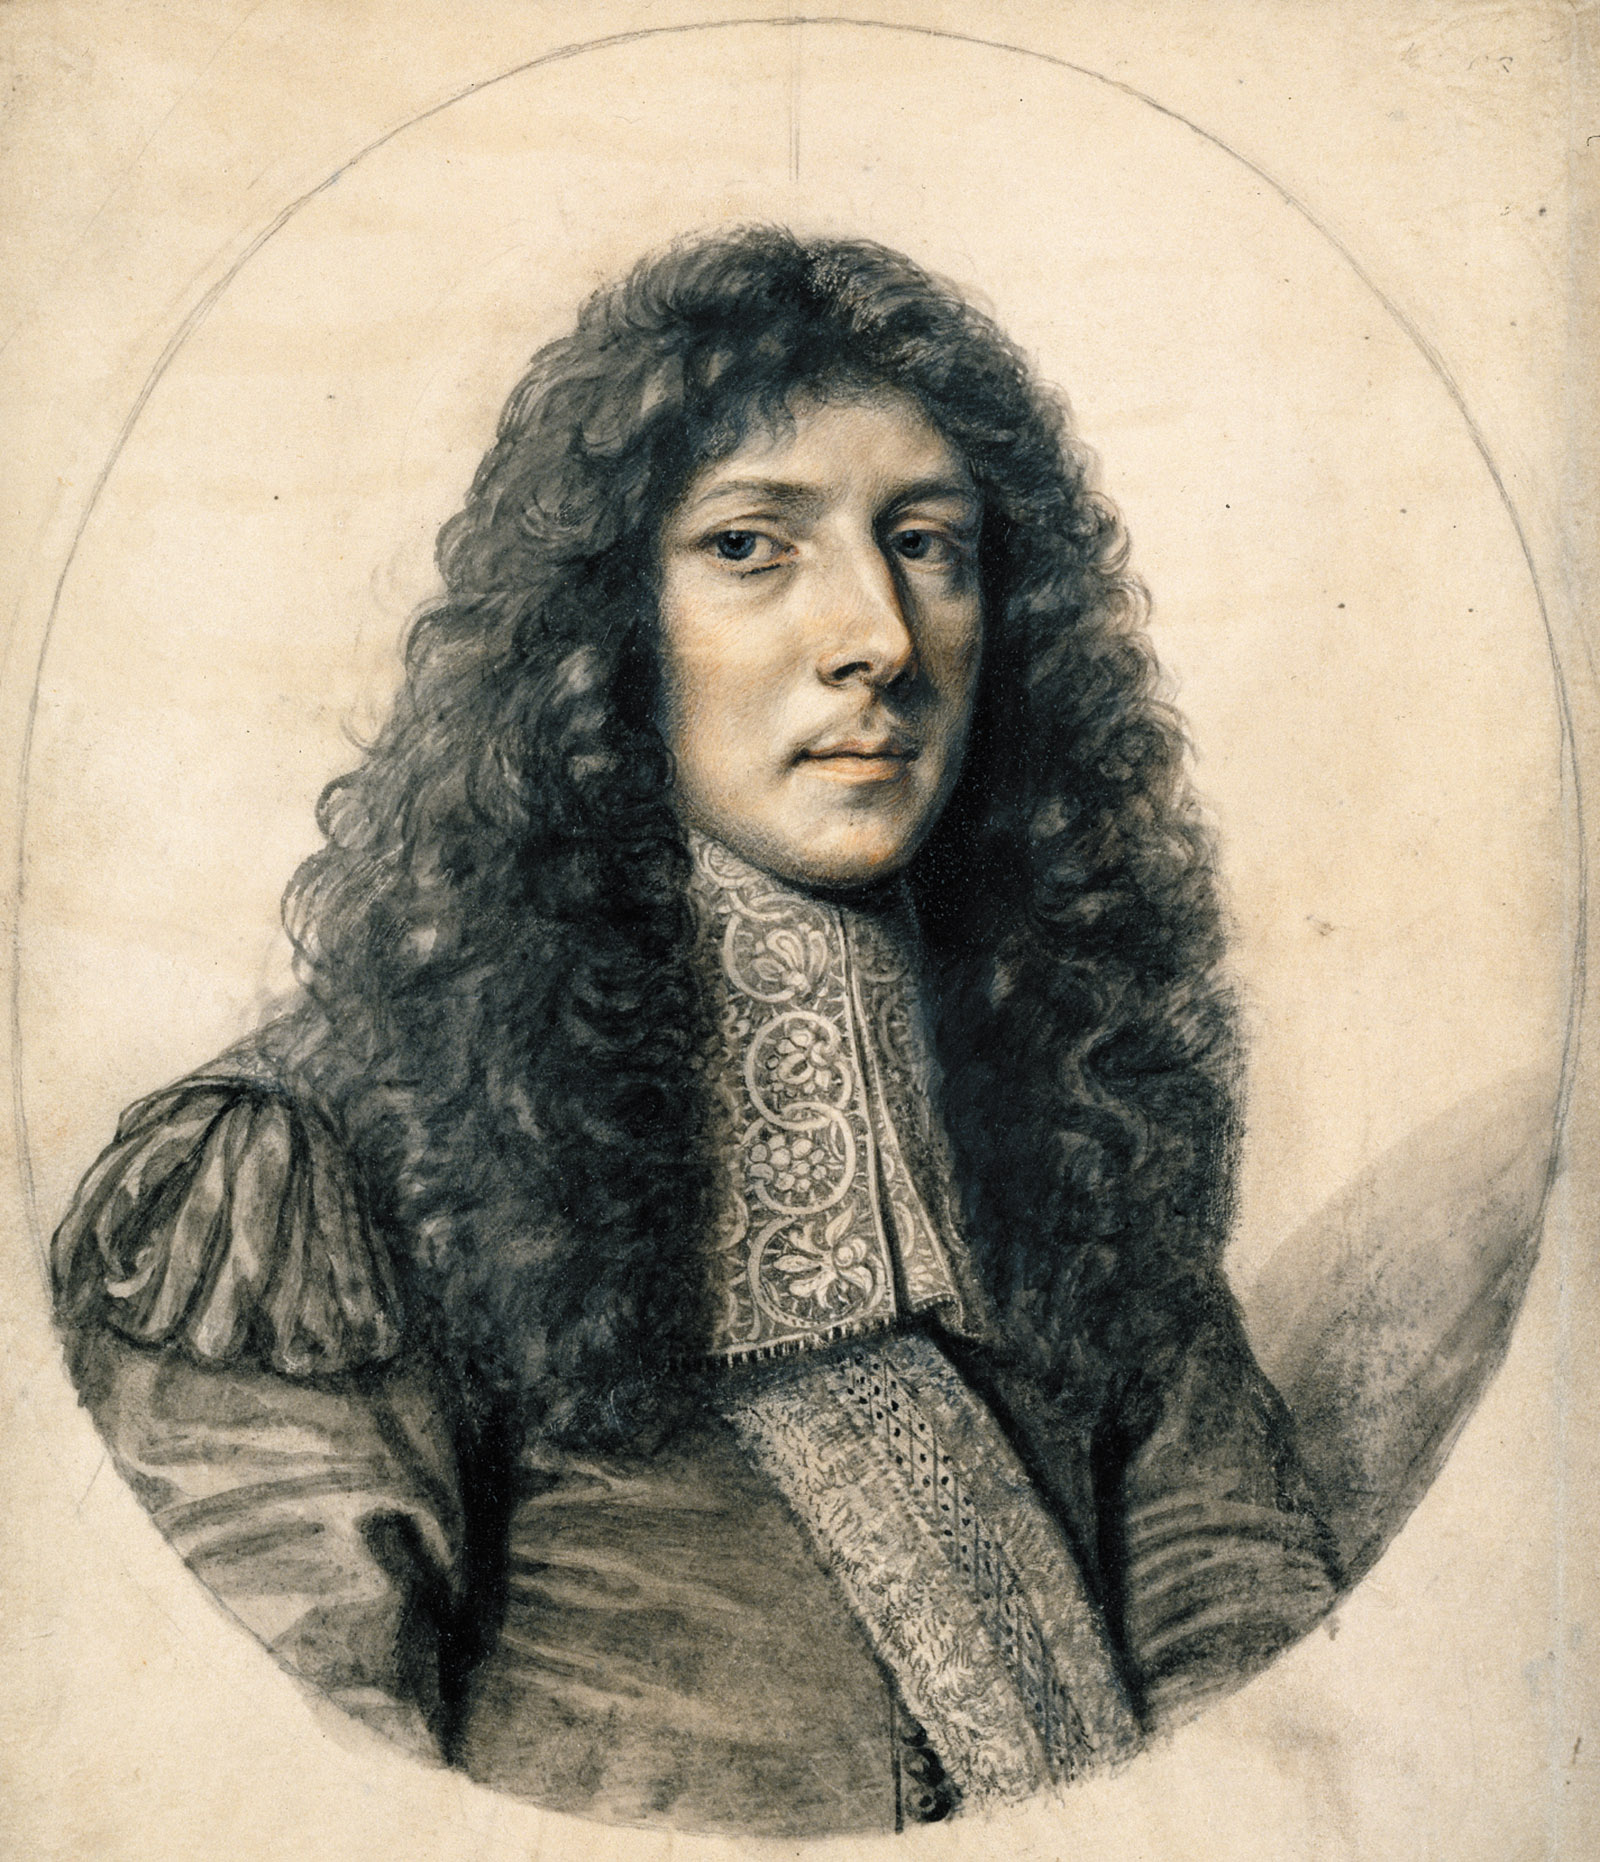 John Aubrey; portrait by William Faithorne, seventeenth century